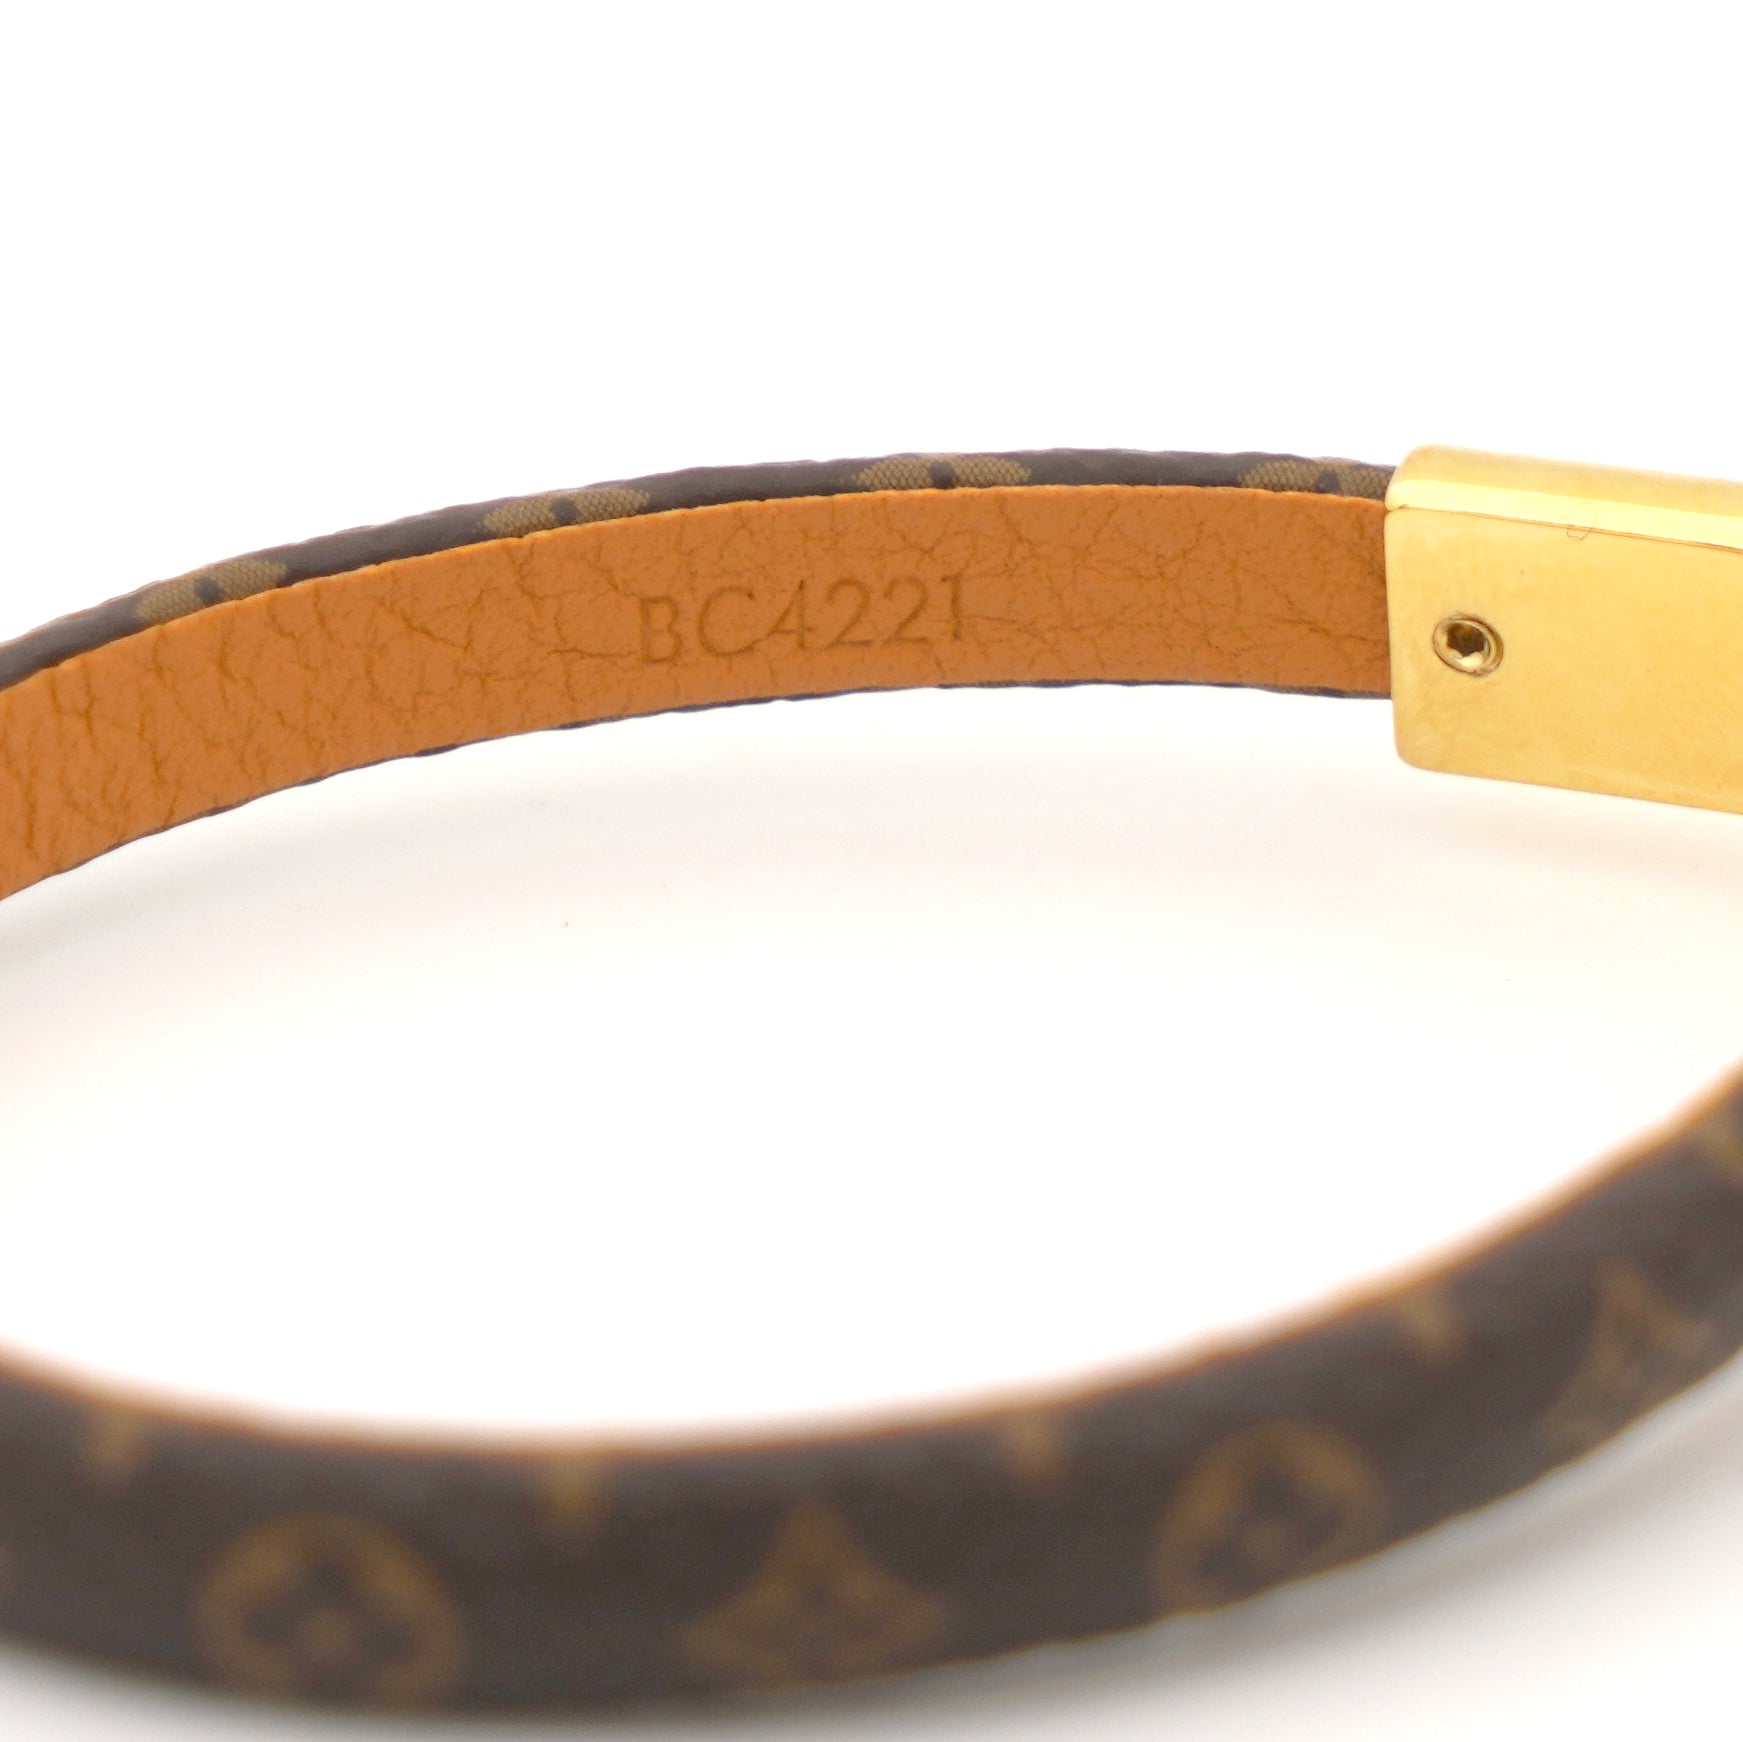 Bracelet Louis Vuitton Vivienne Monogram Charm Bracelet Size19 M New Box  Receipt  eBay